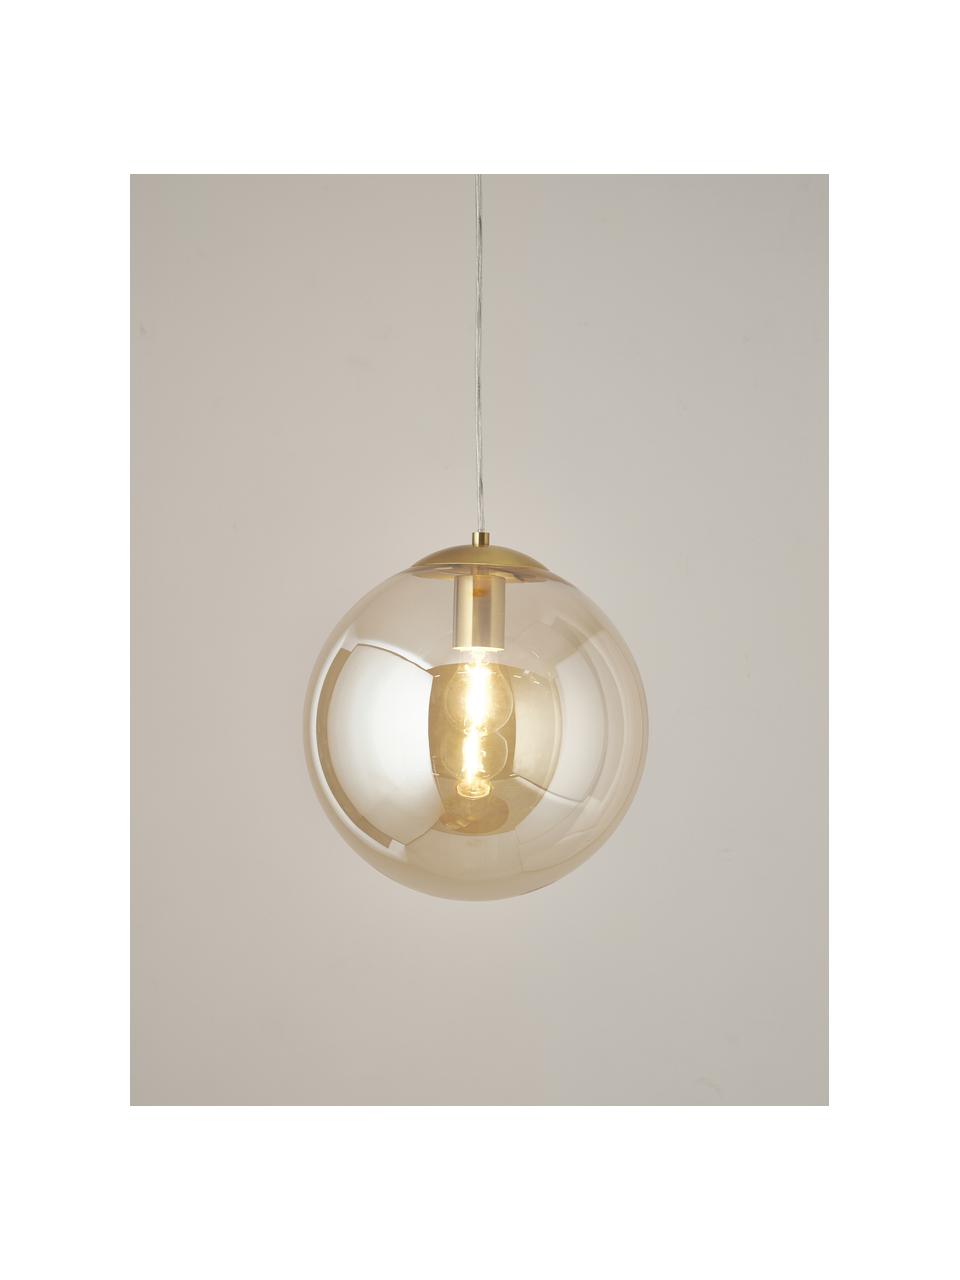 Lámpara de techo Bao, Pantalla: vidrio, Anclaje: metal galvanizado, Cable: cubierto en tela, Champán, dorado, Ø 30 x Al 90 cm